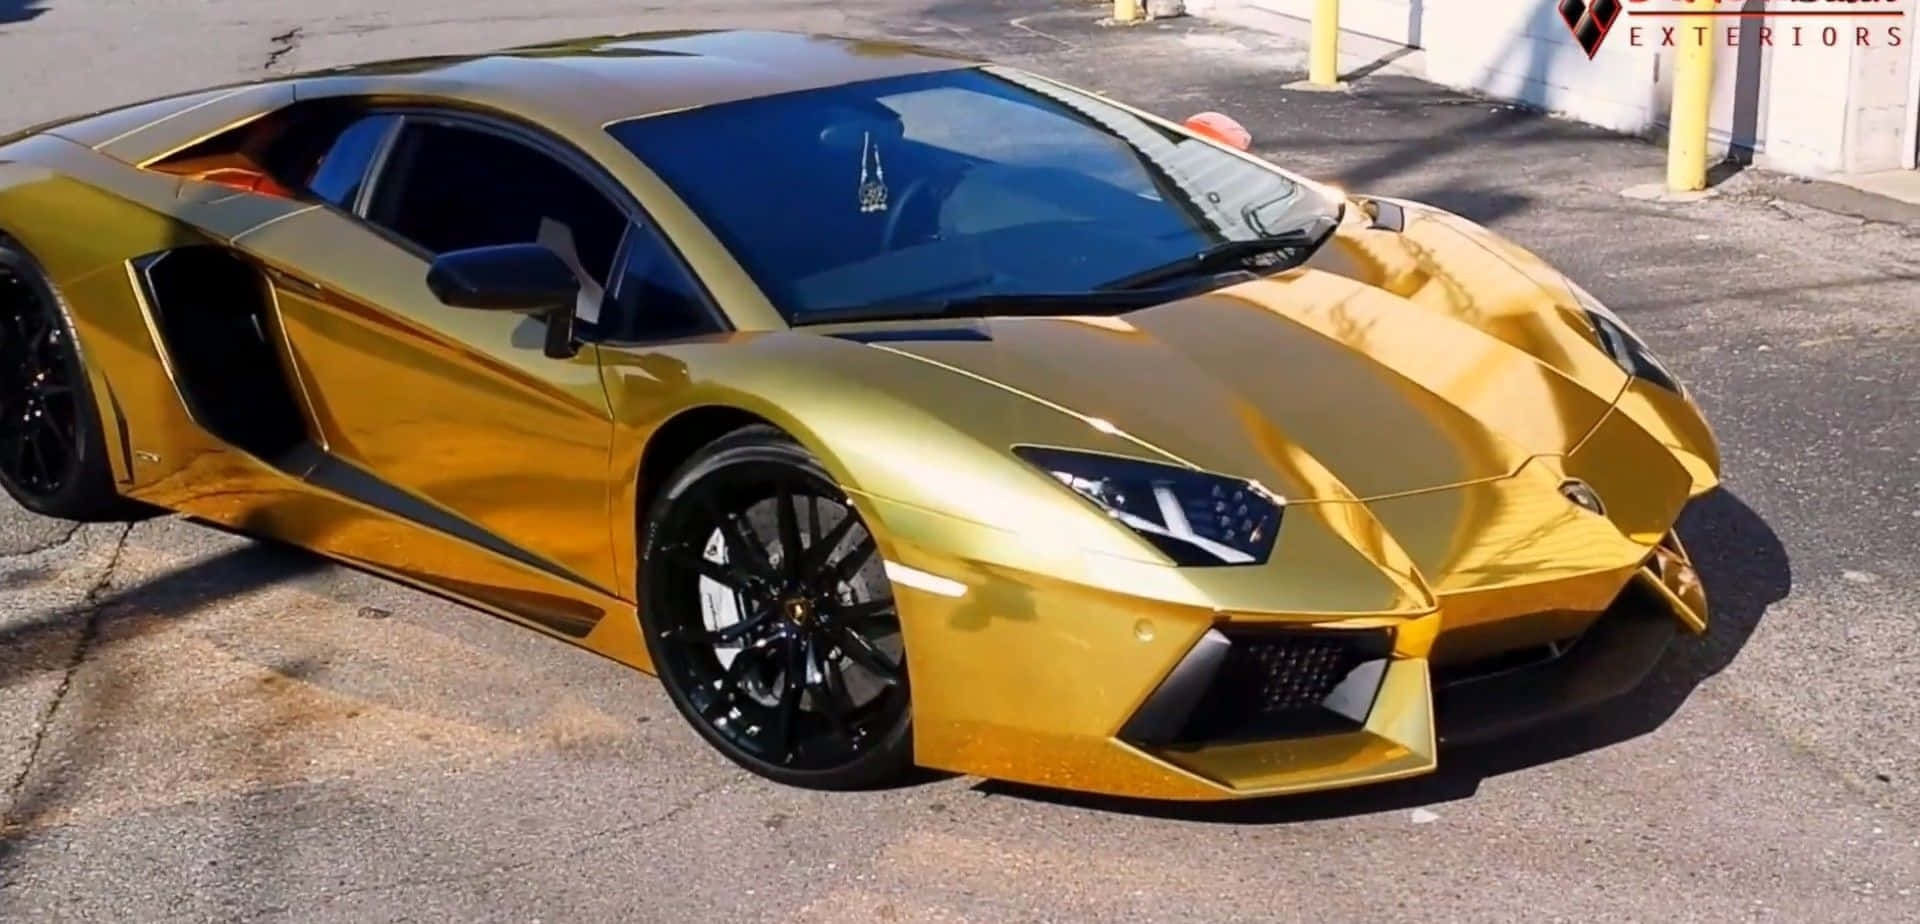 Gold Lamborghini: Nếu bạn đam mê những chiếc siêu xe đẳng cấp thì hình ảnh của một chiếc Lamborghini màu vàng chắc chắn là sự lựa chọn hoàn hảo. Những đường nét thể thao và mạnh mẽ của chiếc xe này sẽ khiến bạn ngẩn ngơ và phấn khích.